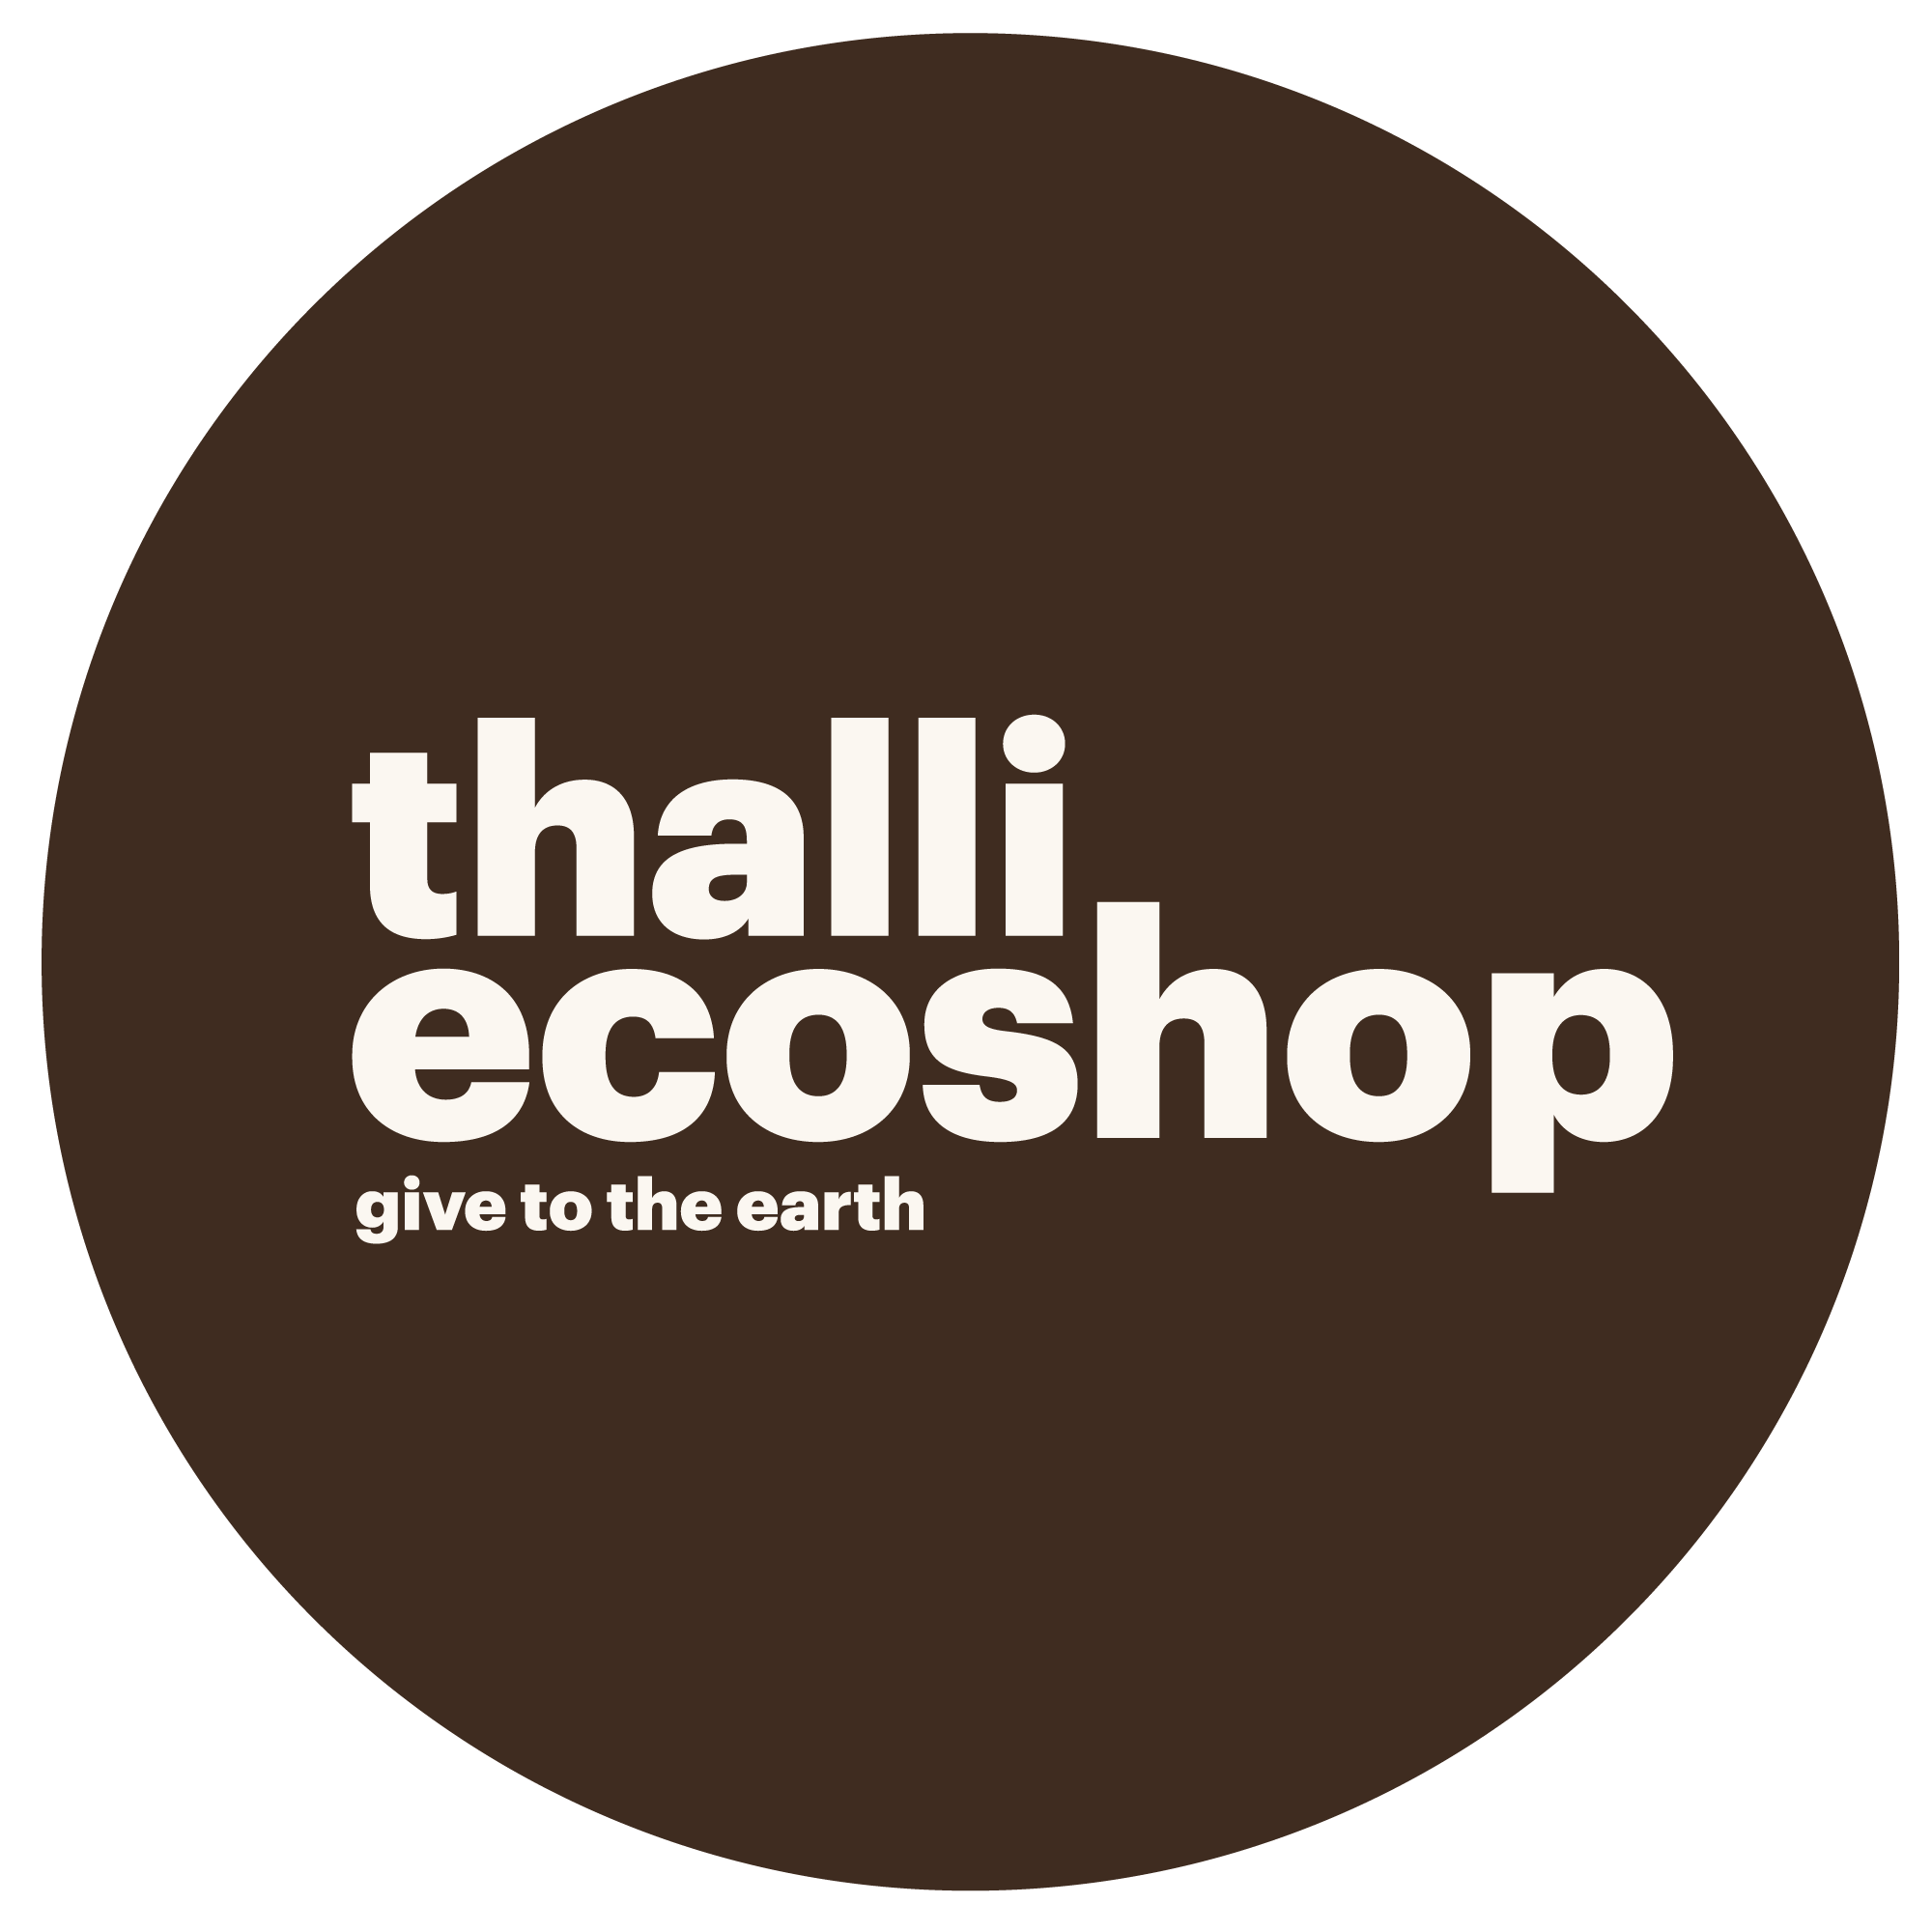 EcoShop